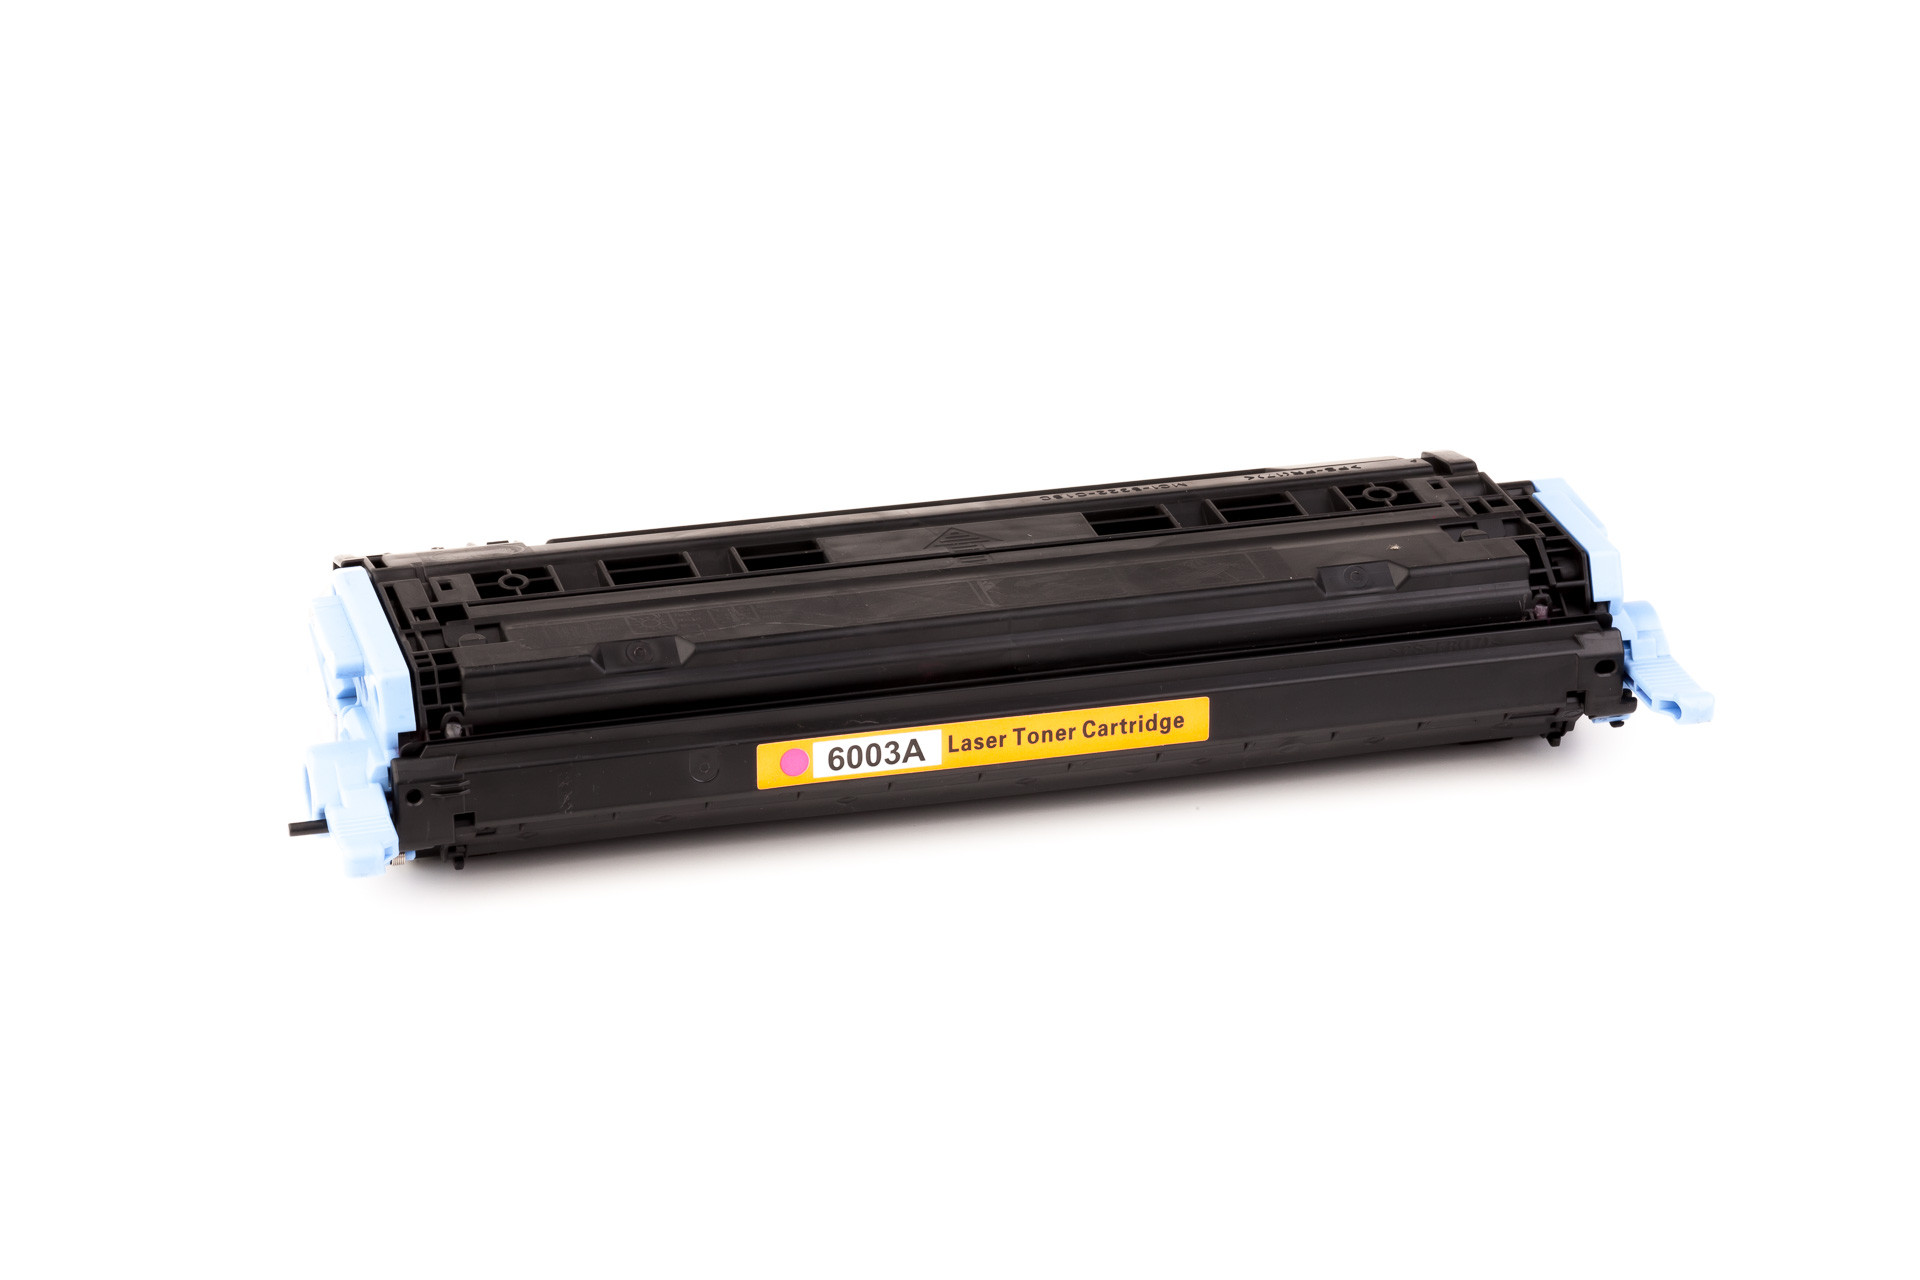 Toner cartridge (alternative) compatible with HP Color Laserjet 1600 - Q6003A - / 2600 / 2605 / CM 1015 / 1017 / Canon LBP-5000 / CRG 707M / 707 M magenta